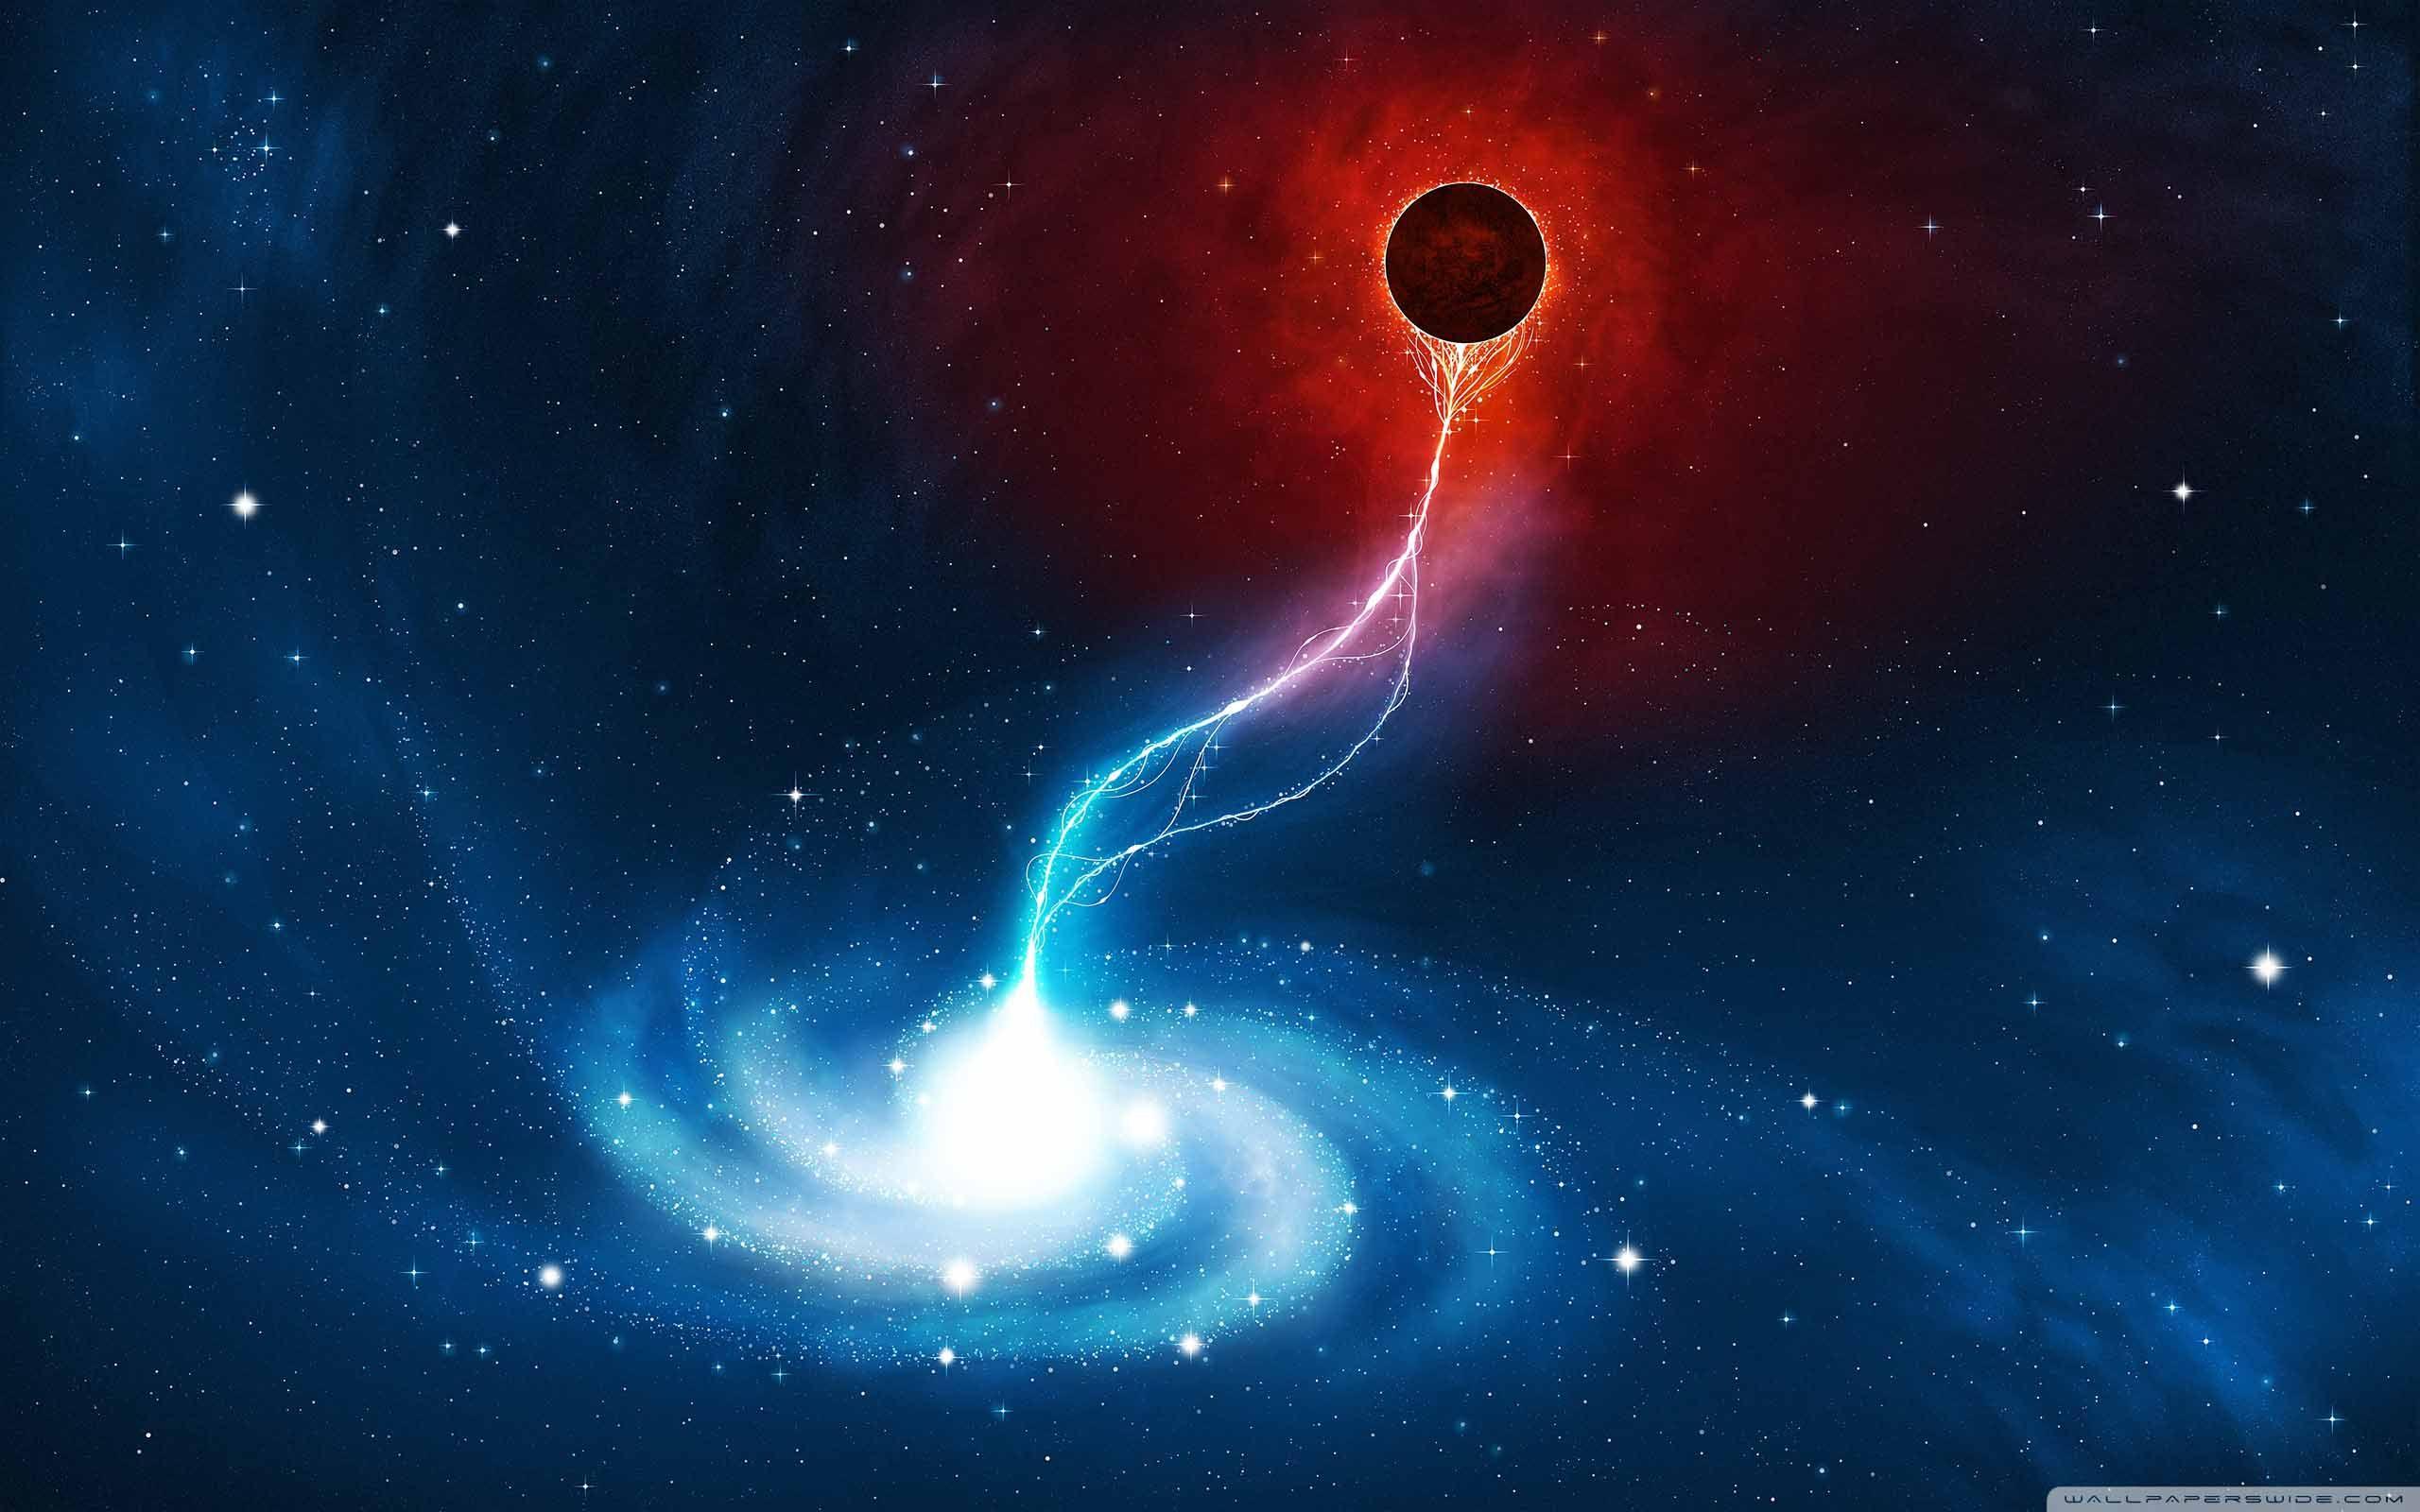 Nếu bạn yêu thích vũ trụ và sự ngoạn mục của nó, đừng bỏ qua hình ảnh của ngân hà xoắn ốc. Chúng ta có thể tìm thấy những cảnh tượng tuyệt đẹp và kỳ dị của hệ thống ngân hà trong hình ảnh này.